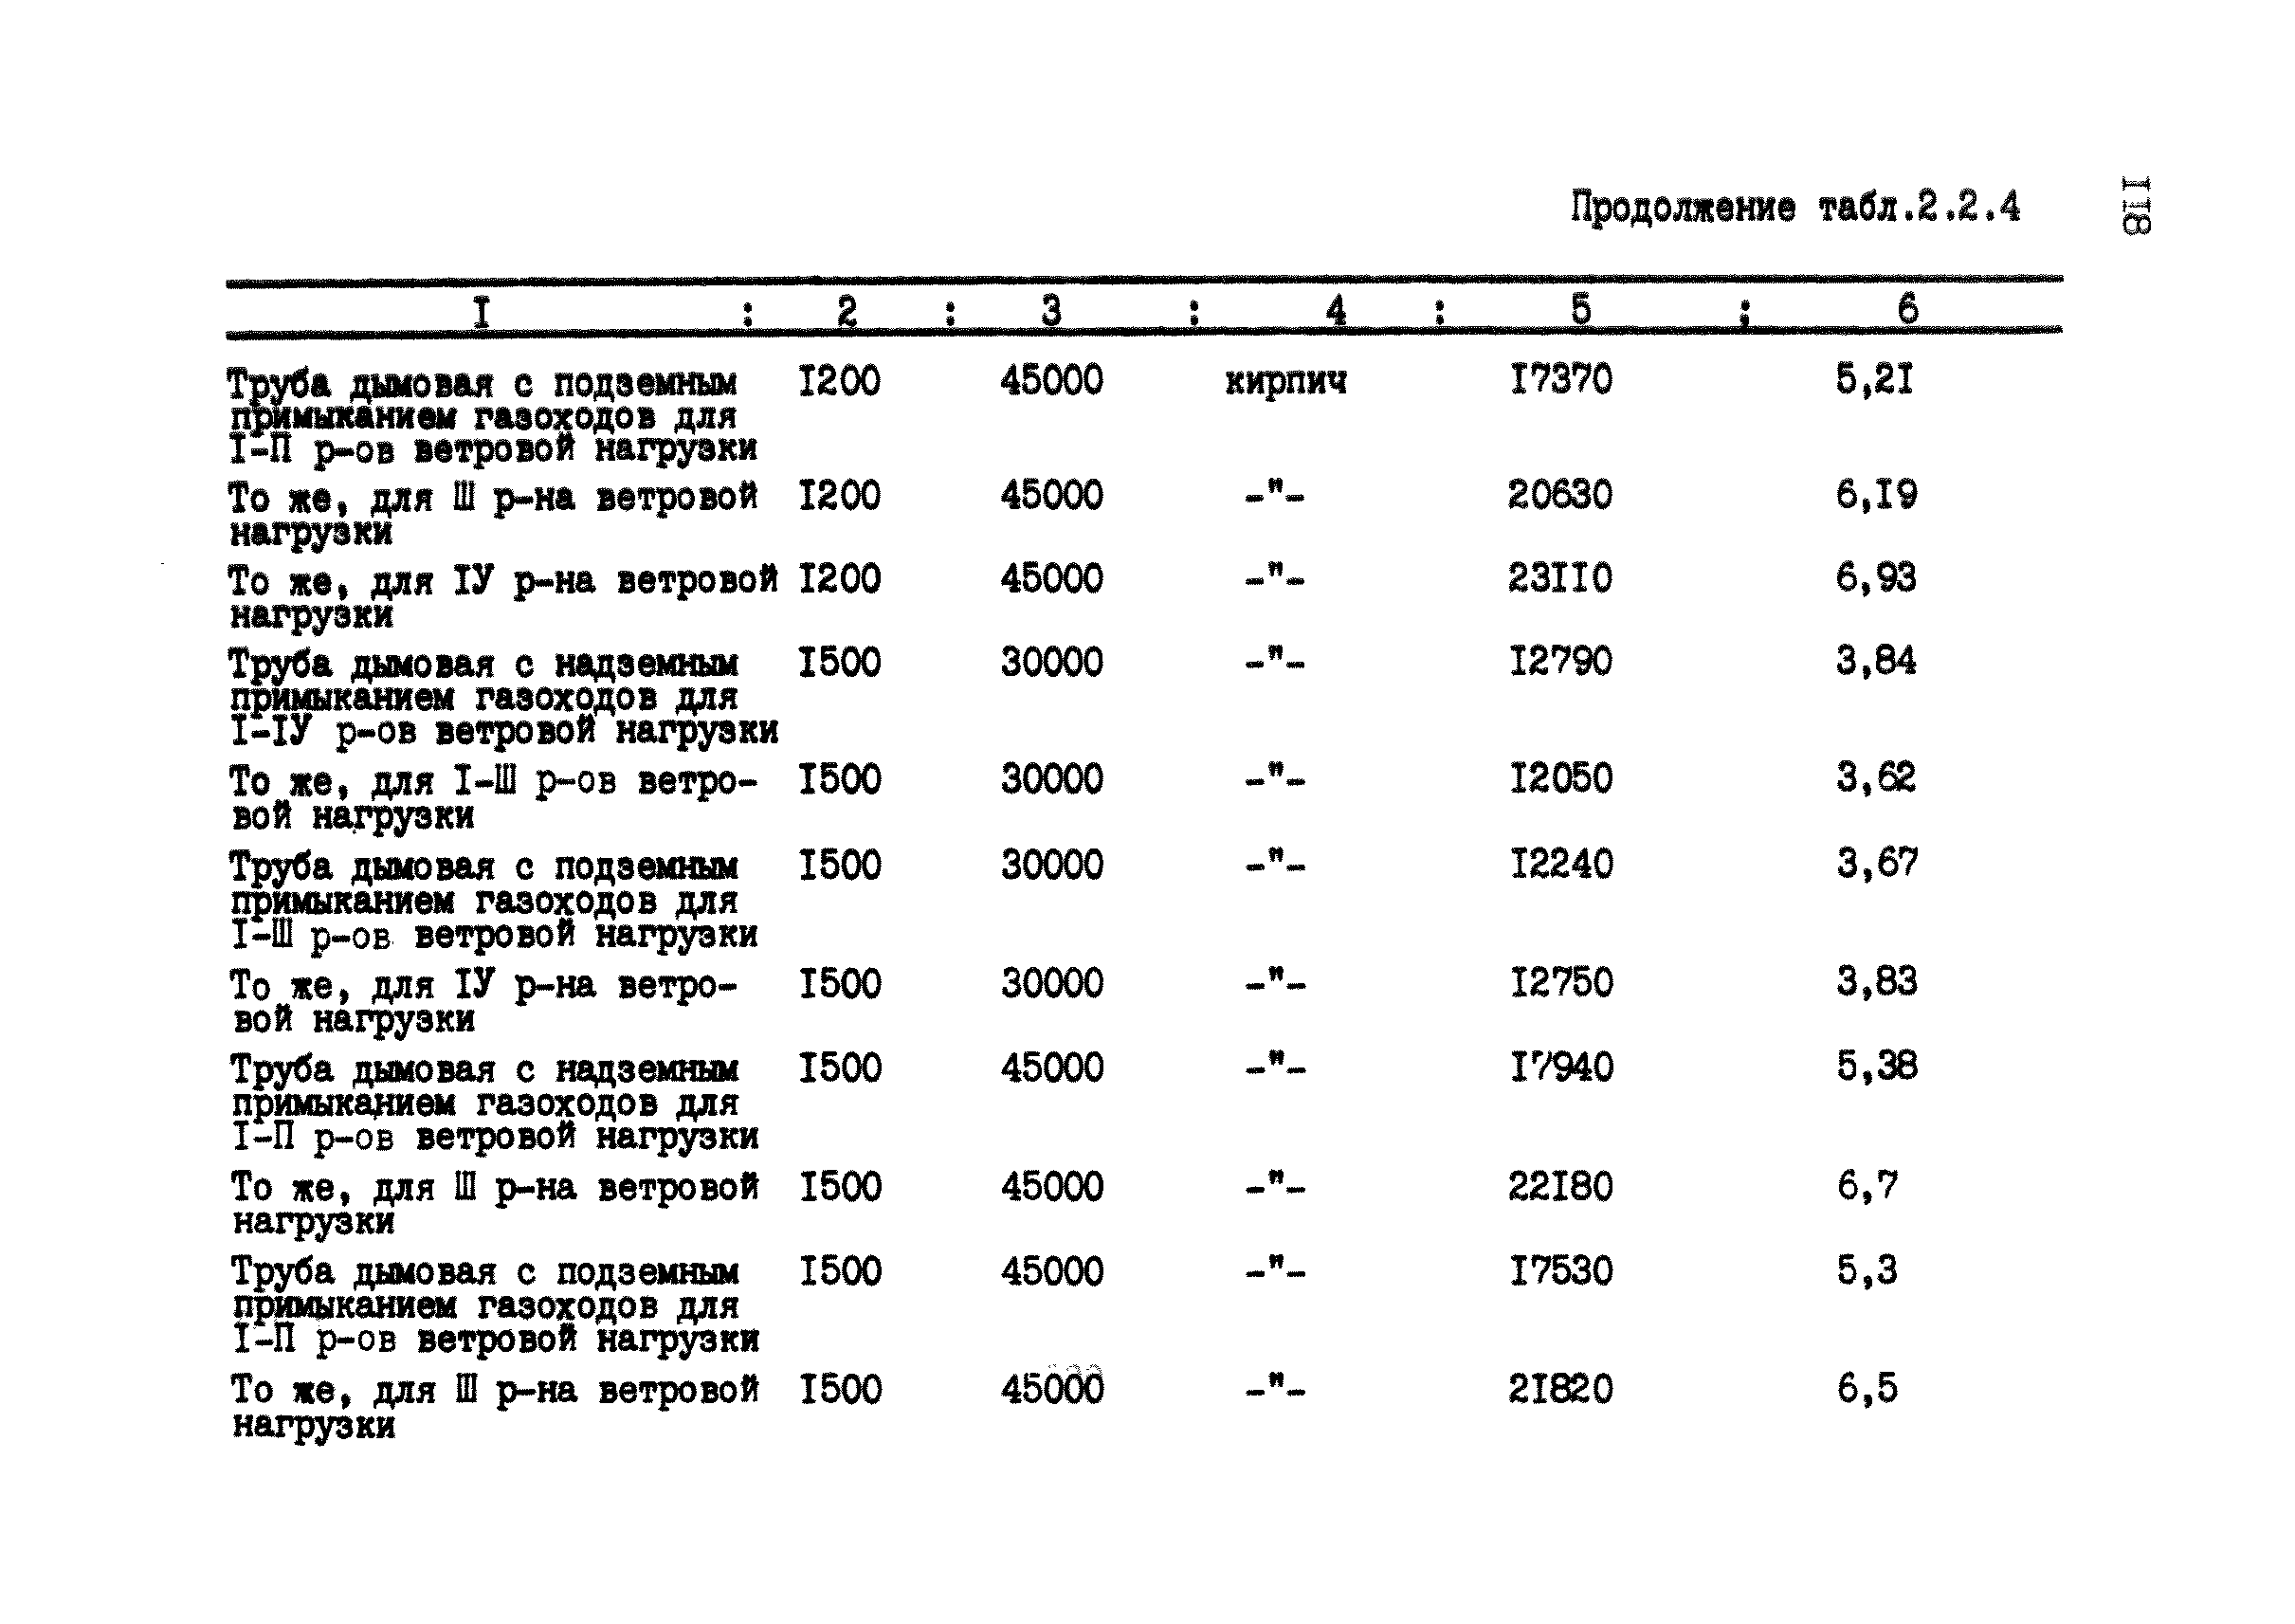 РД 12.13.028-85